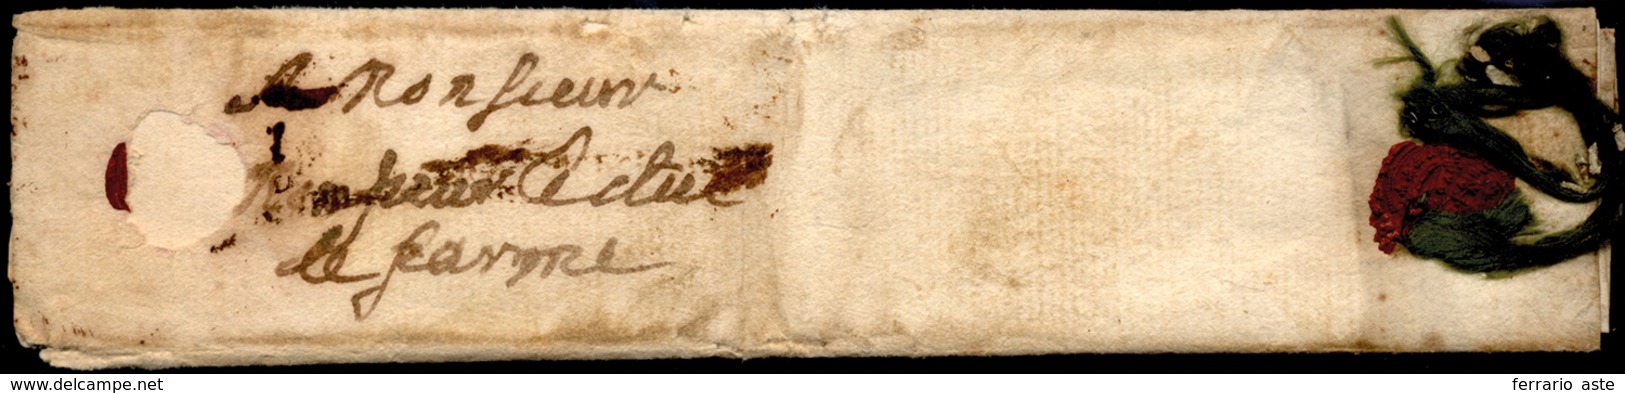 1650 Ca. - Minilettera, Dimensioni 8 X 3,5 Cm, Da Orsay (?) Con Sigillo Rosso In Ceralacca E Nastri ... - 1. ...-1850 Prefilatelia